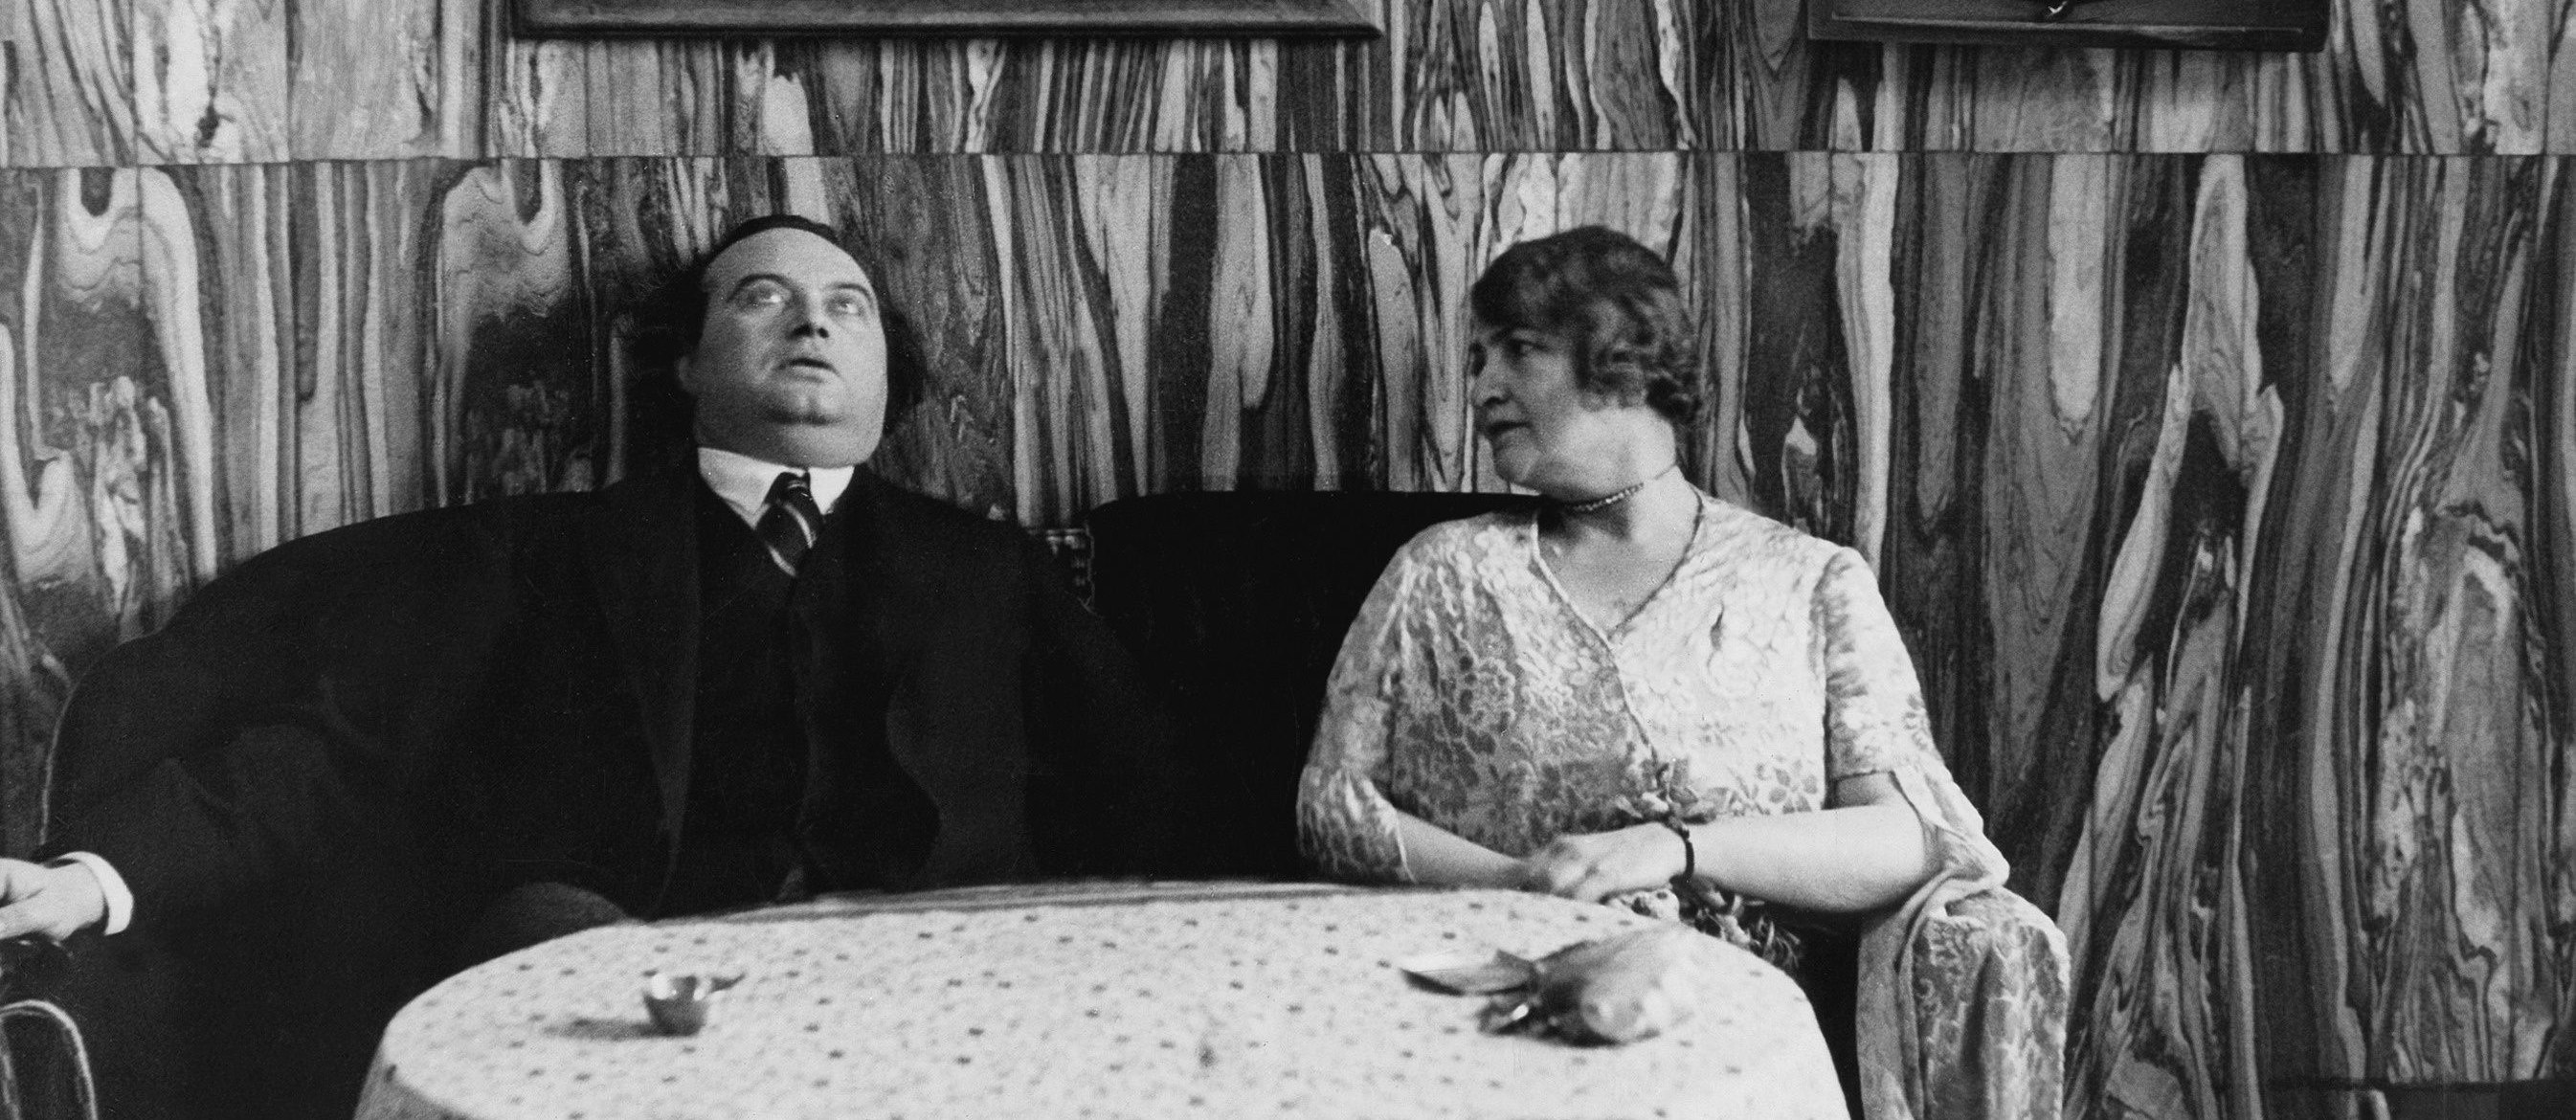 Der österreichische Schriftsteller Franz Werfel sitzt zusammen mit seiner Frau Alma Mahler-Werfel auf einer Couch